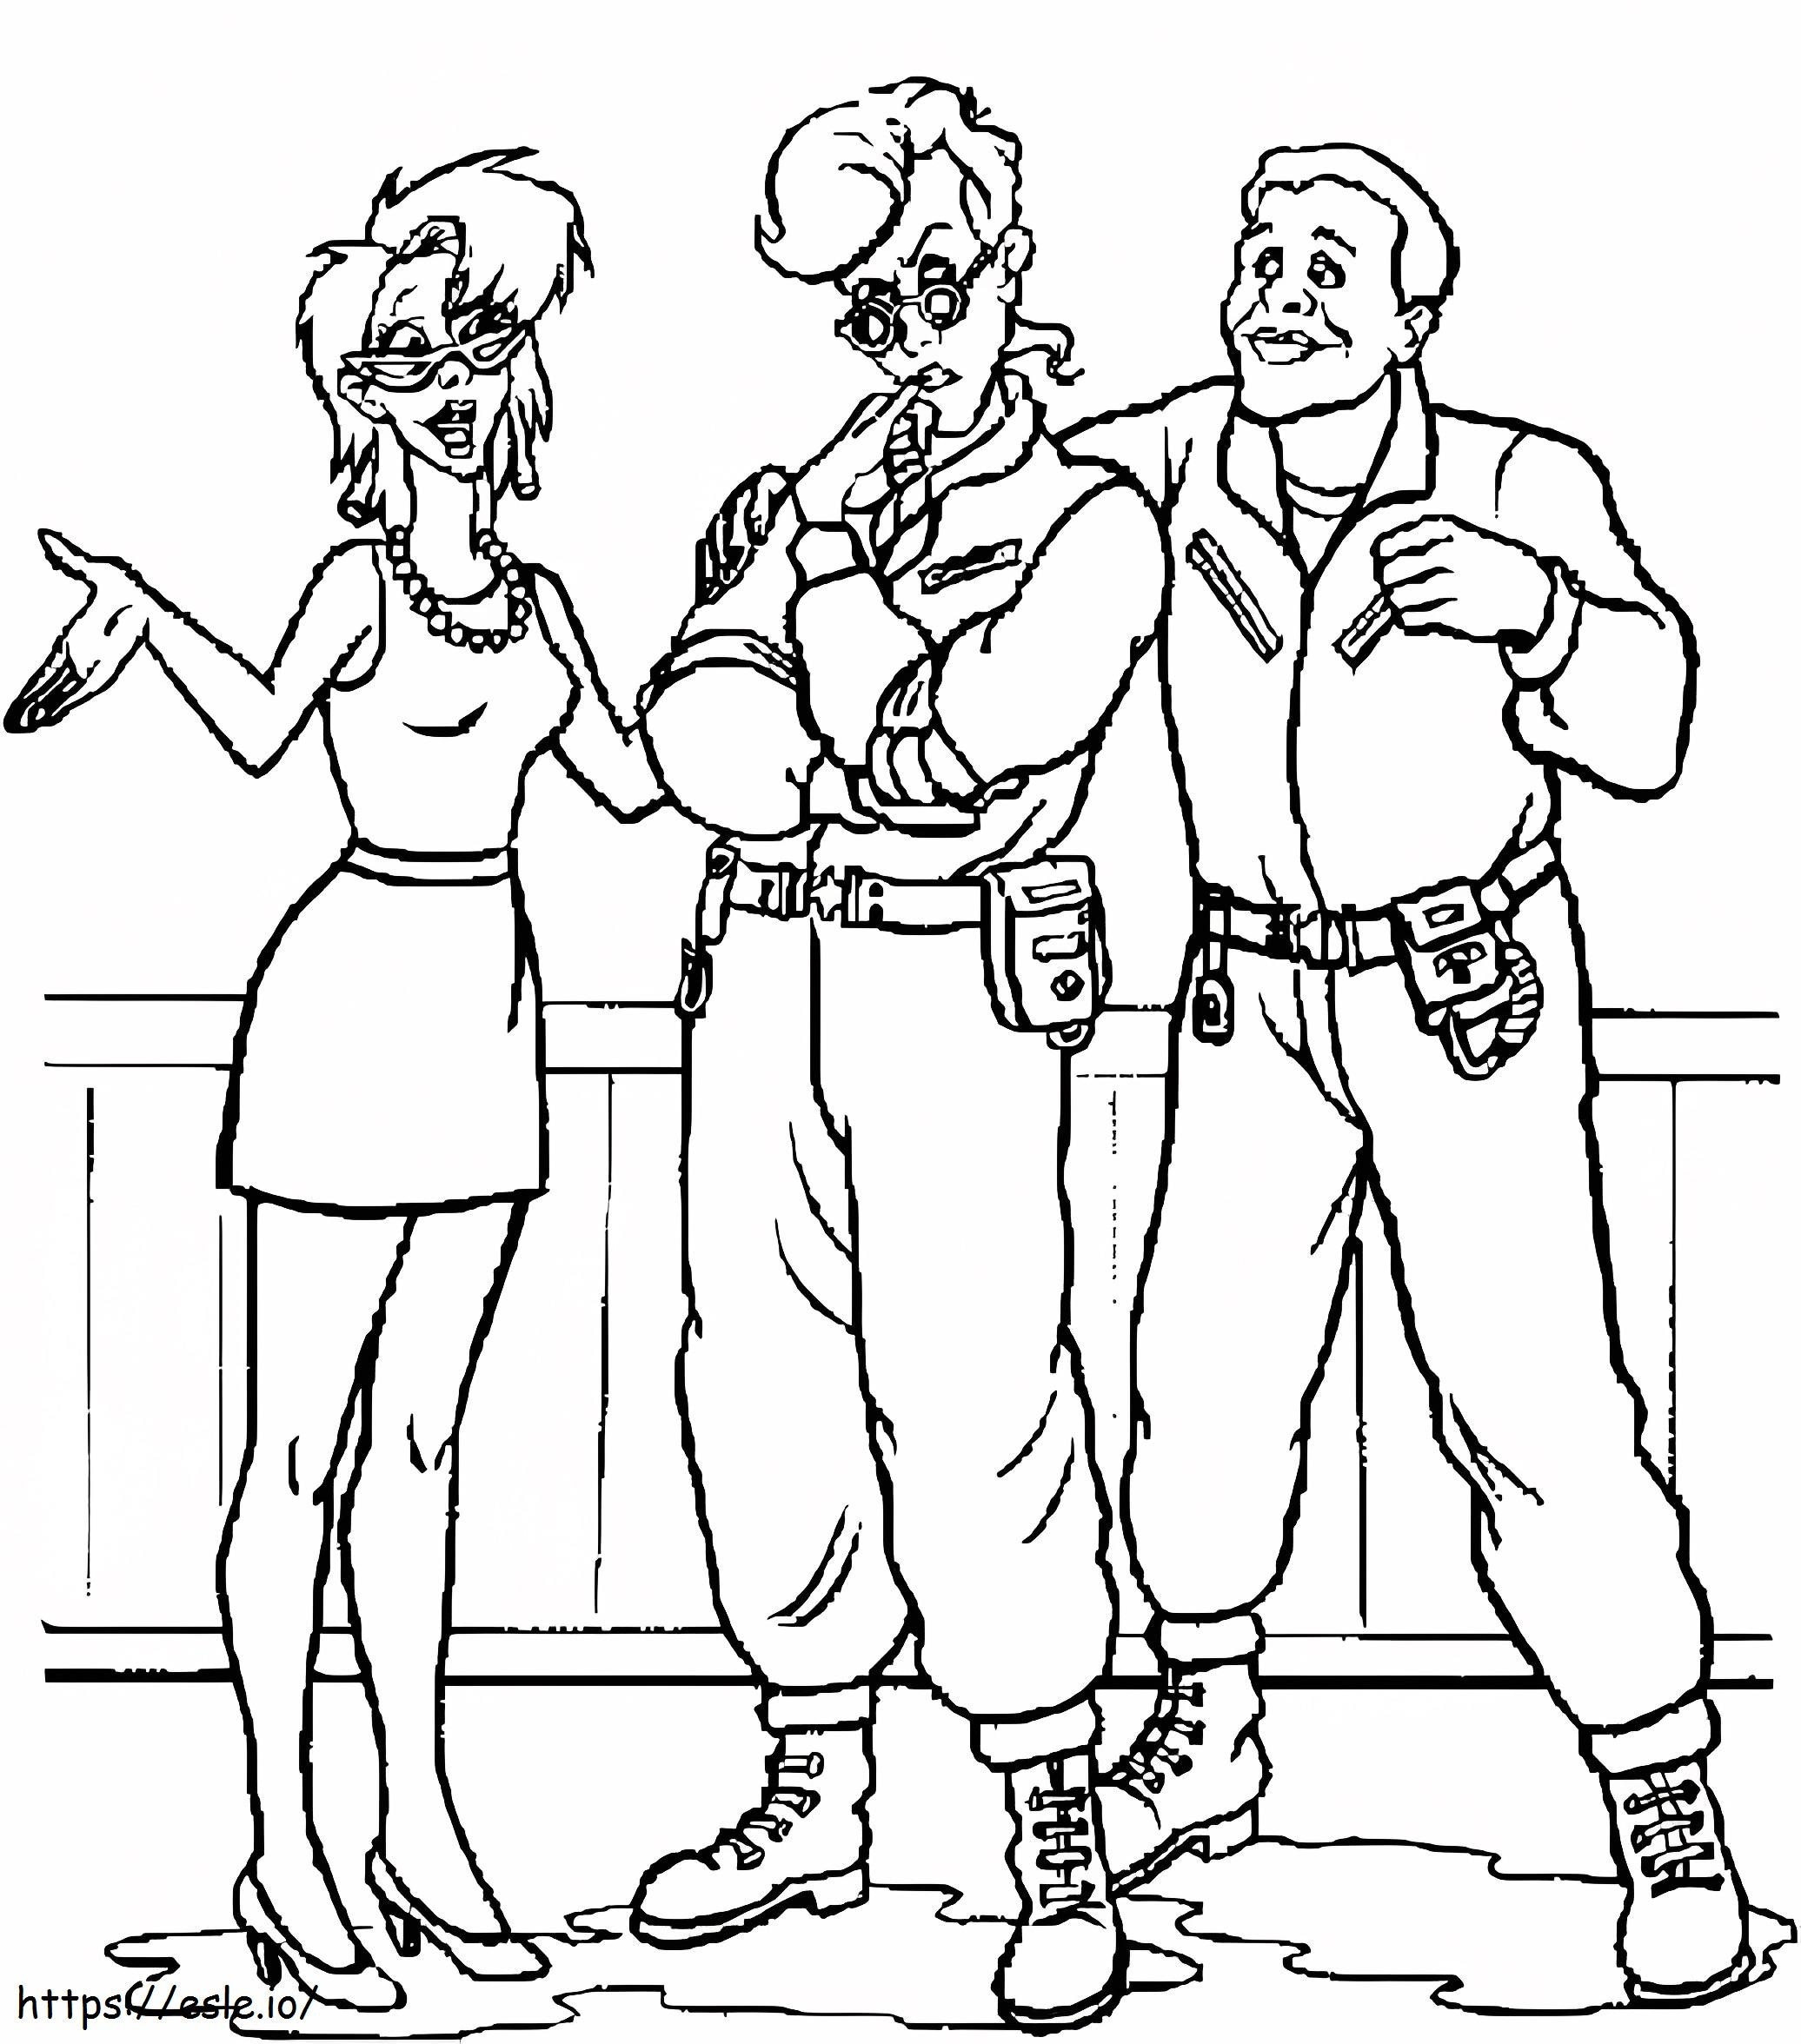 Disegno di tre personaggi di Ghostbusters da colorare